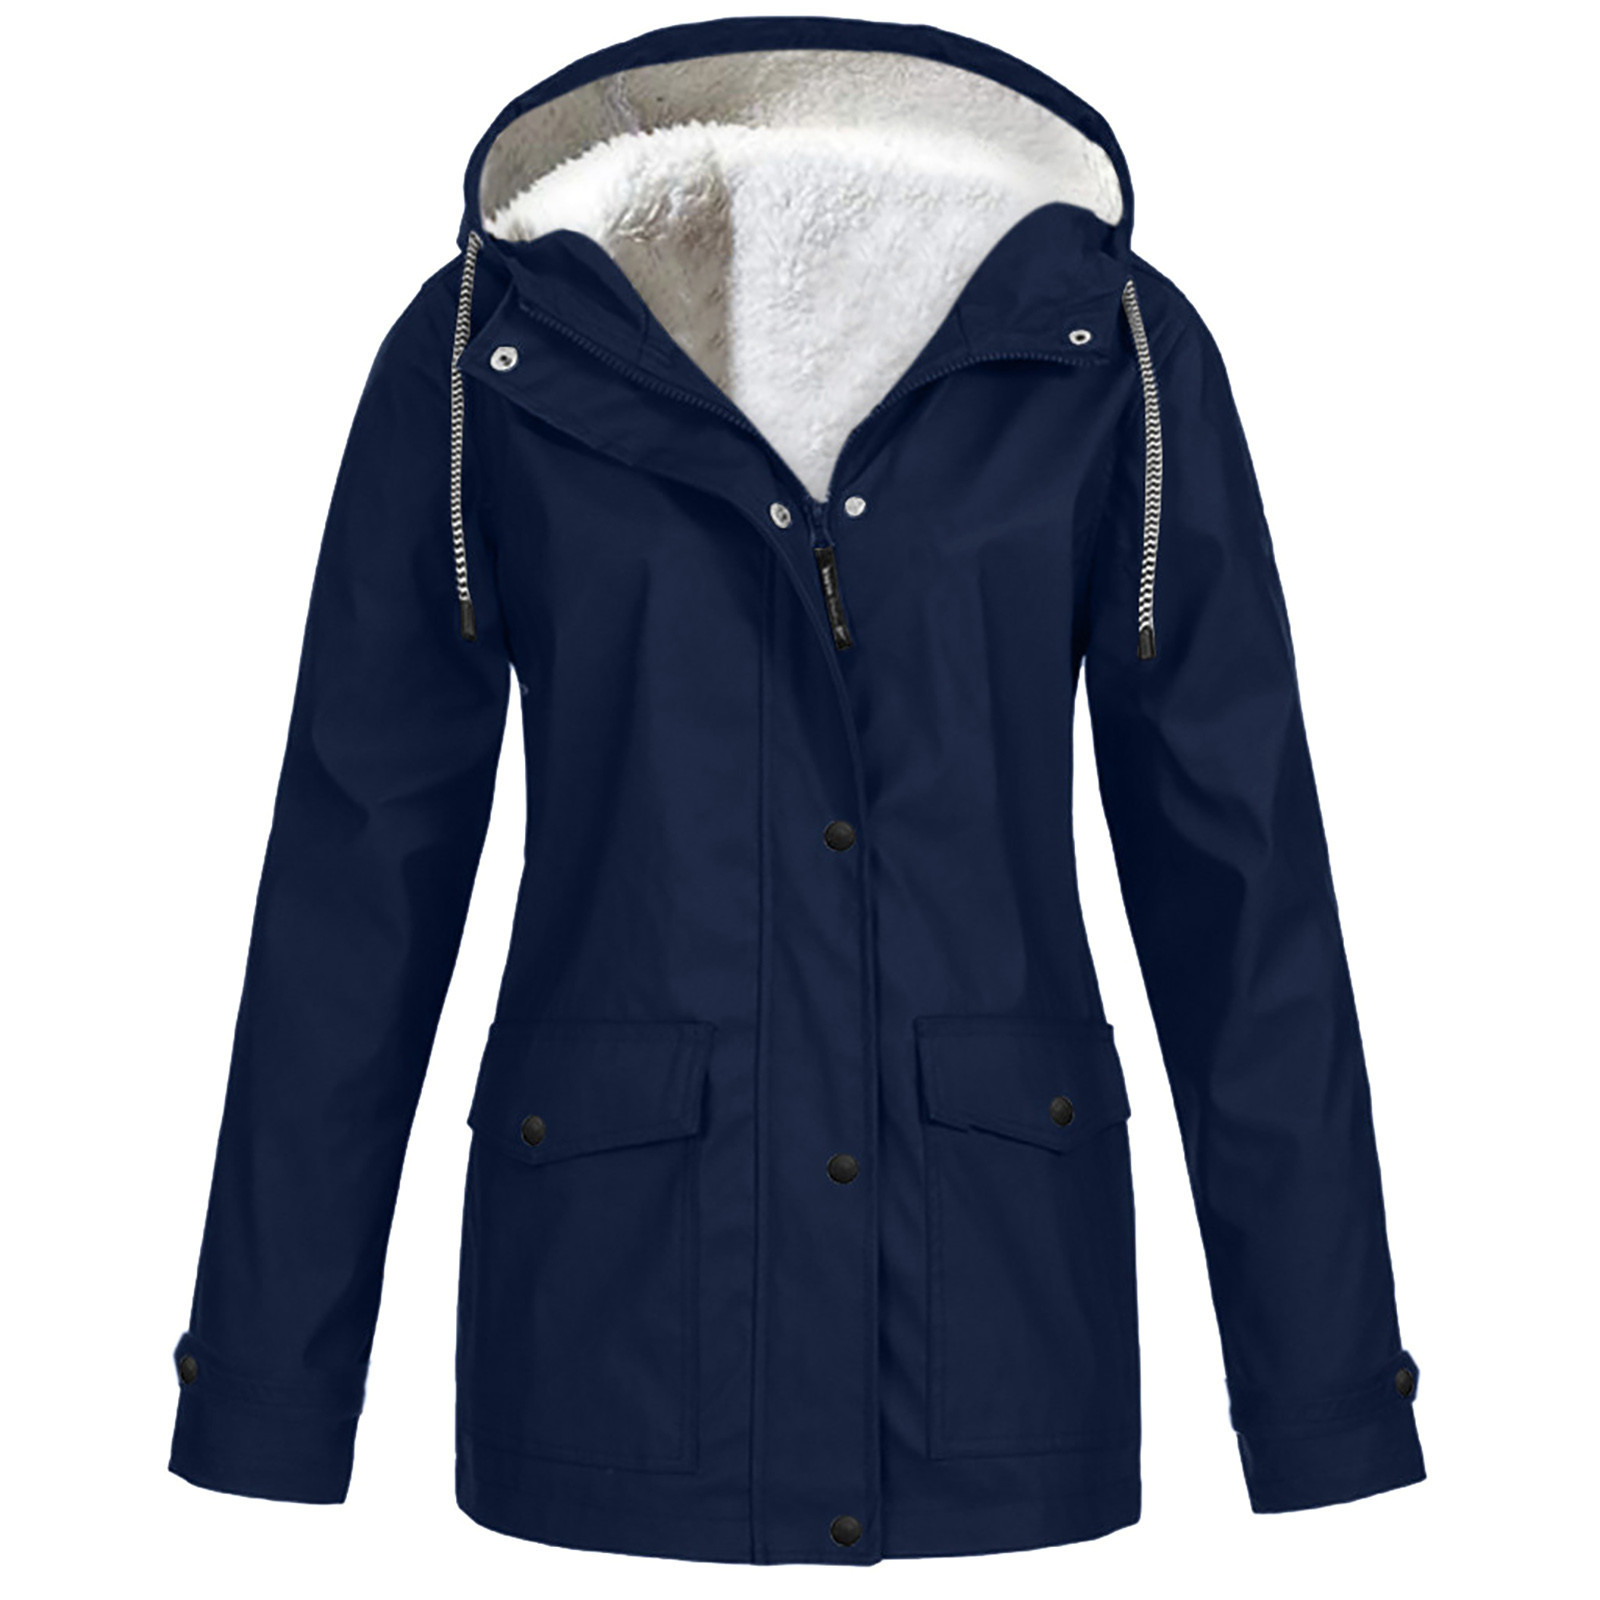 AherBiu Women Plus Size Windbreaker Jackets Waterproof Fleece Lined ...